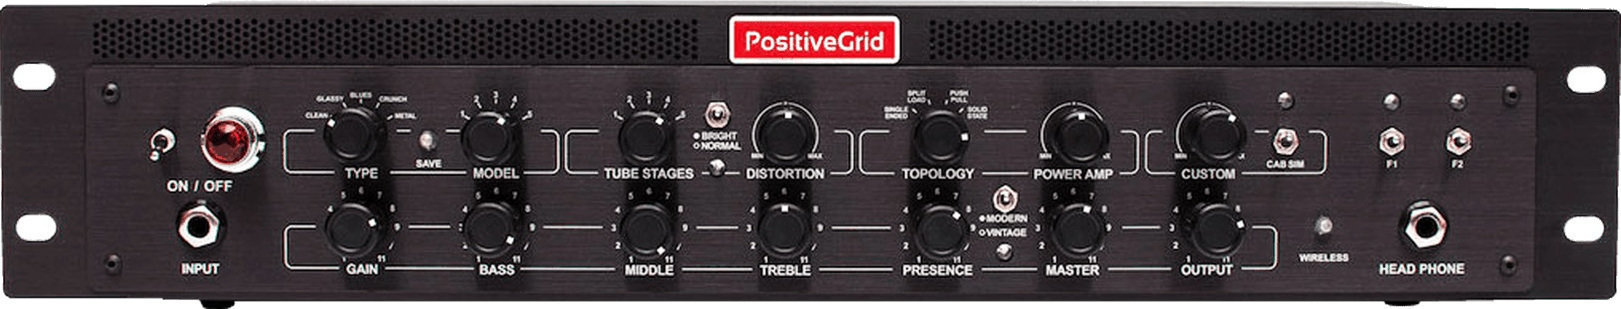 Amplificador de guitarra de modelado Positive Grid BIAS Rack Processor